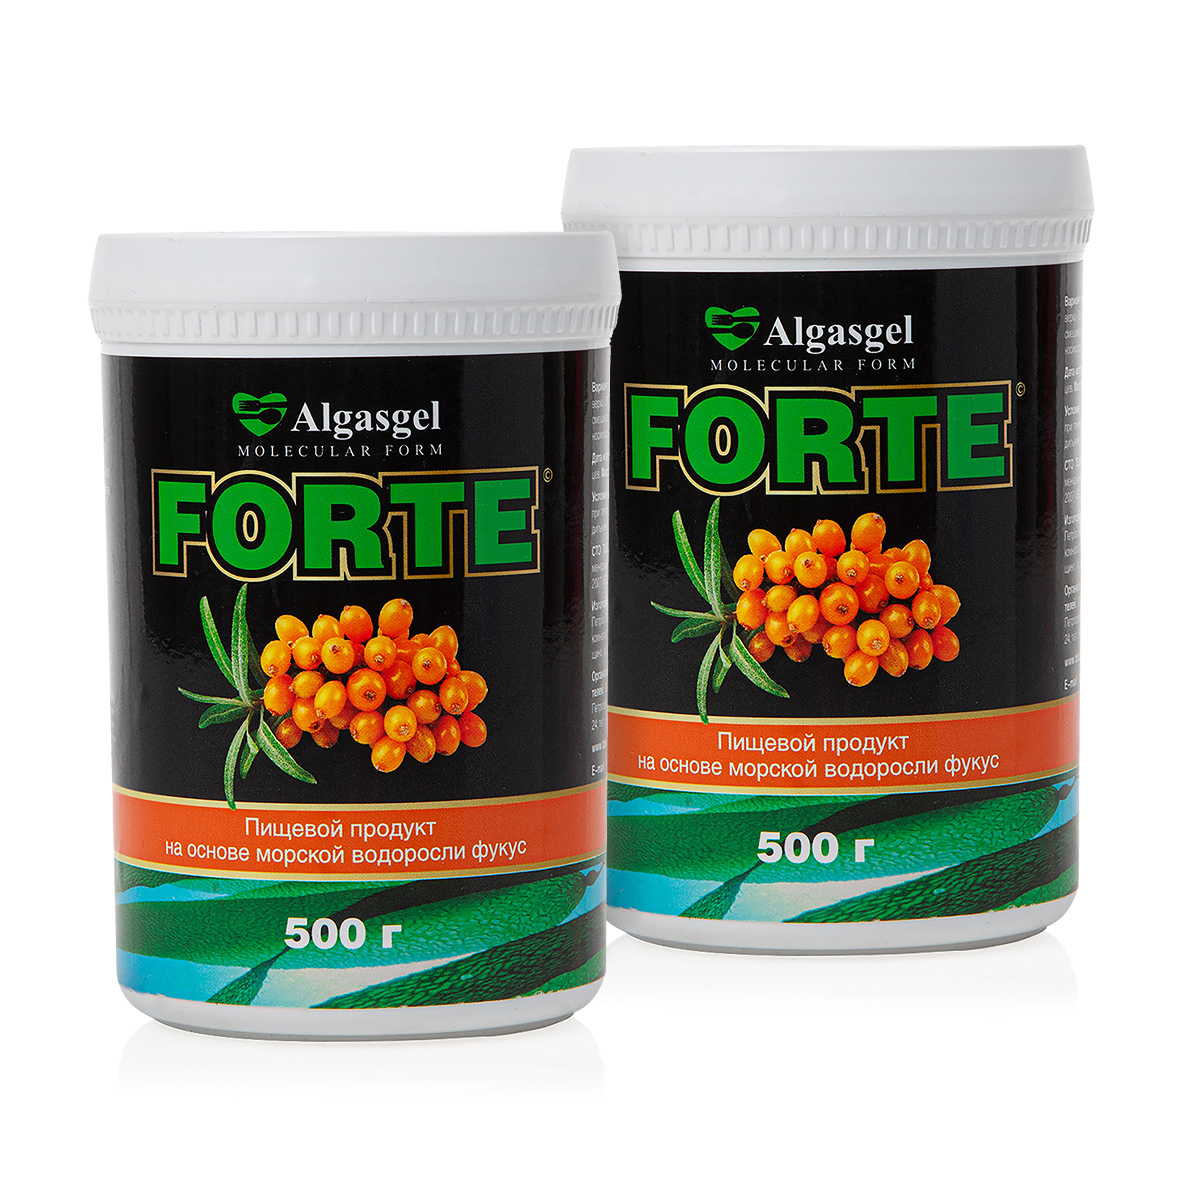 algasgel vision для здоровья глаз 2 уп по 500 г 1 в подарок Пищевой продукт Algasgel Forte (2 шт. по 500 г) + подарок (500 г)